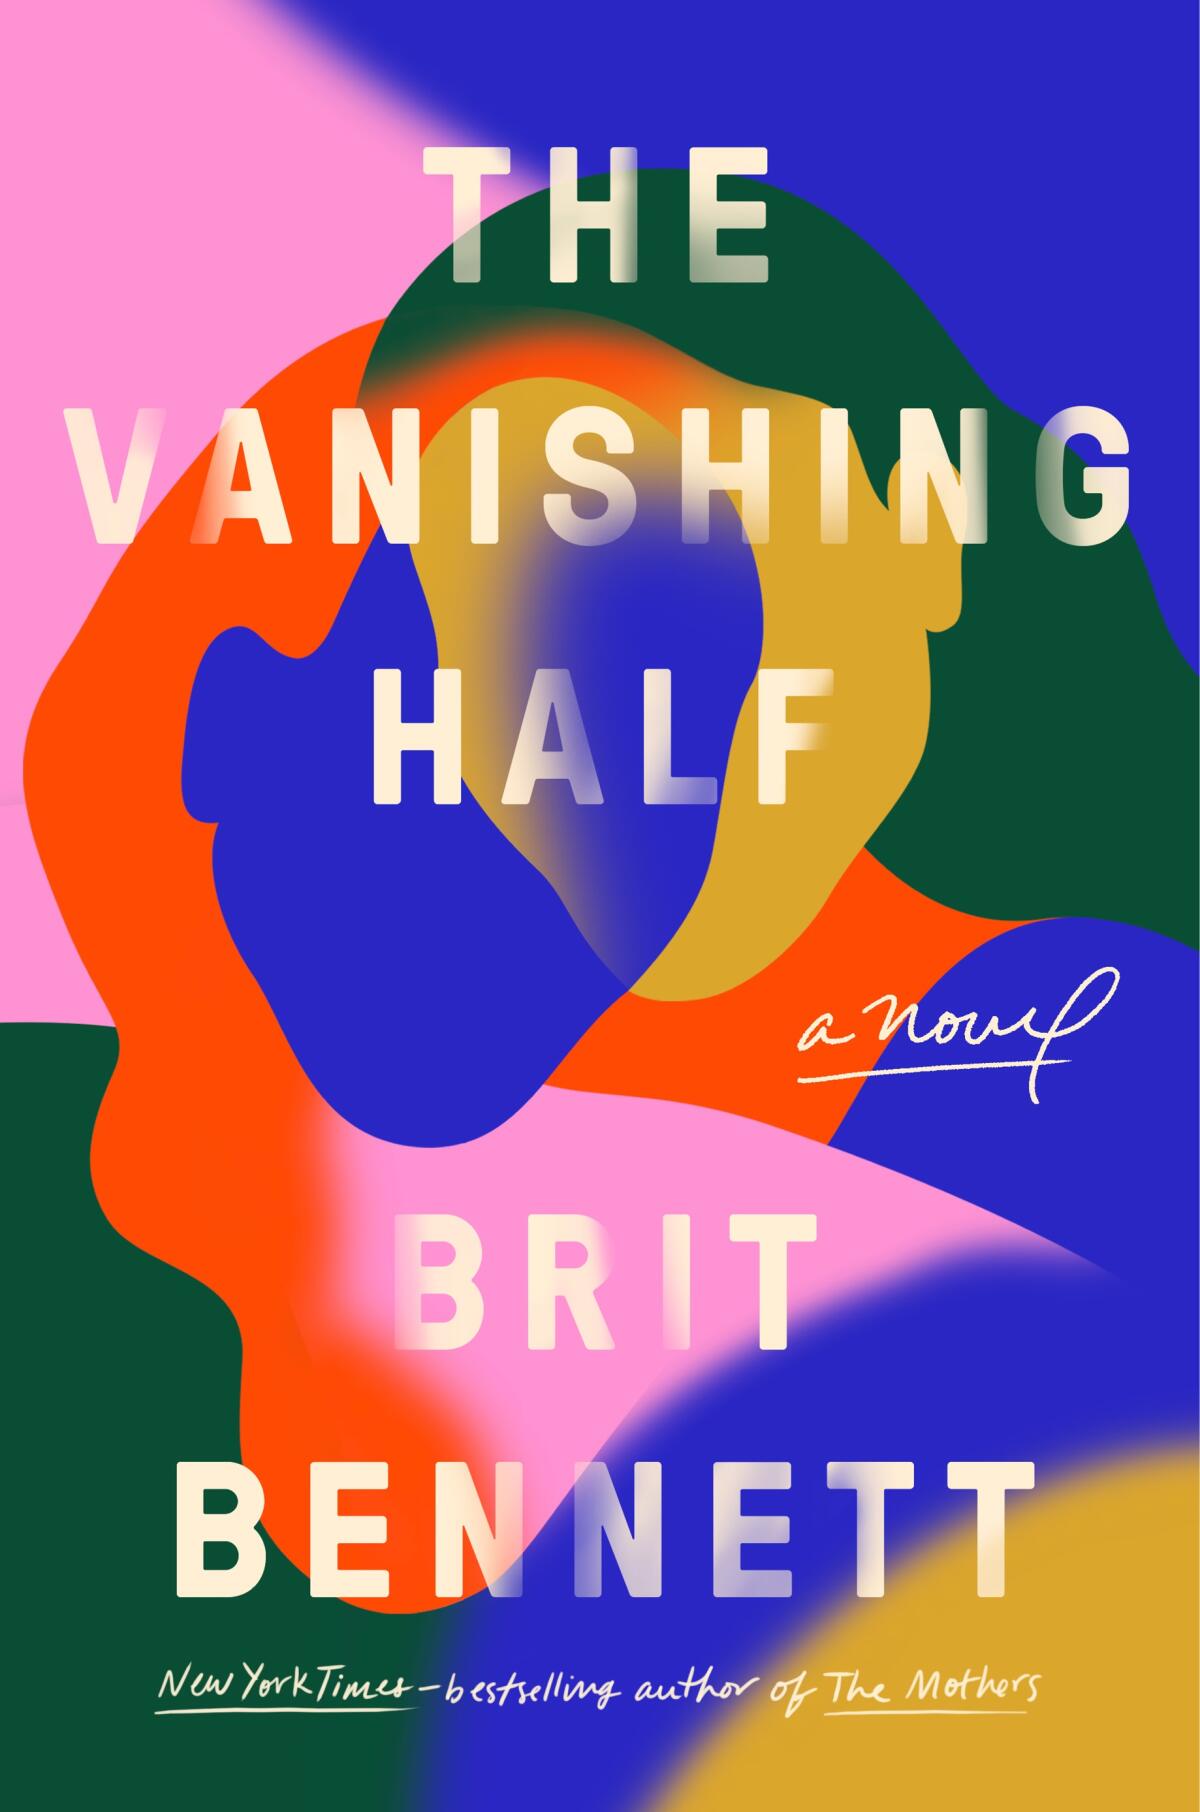 Brit Bennett's "The Vanishing Half."